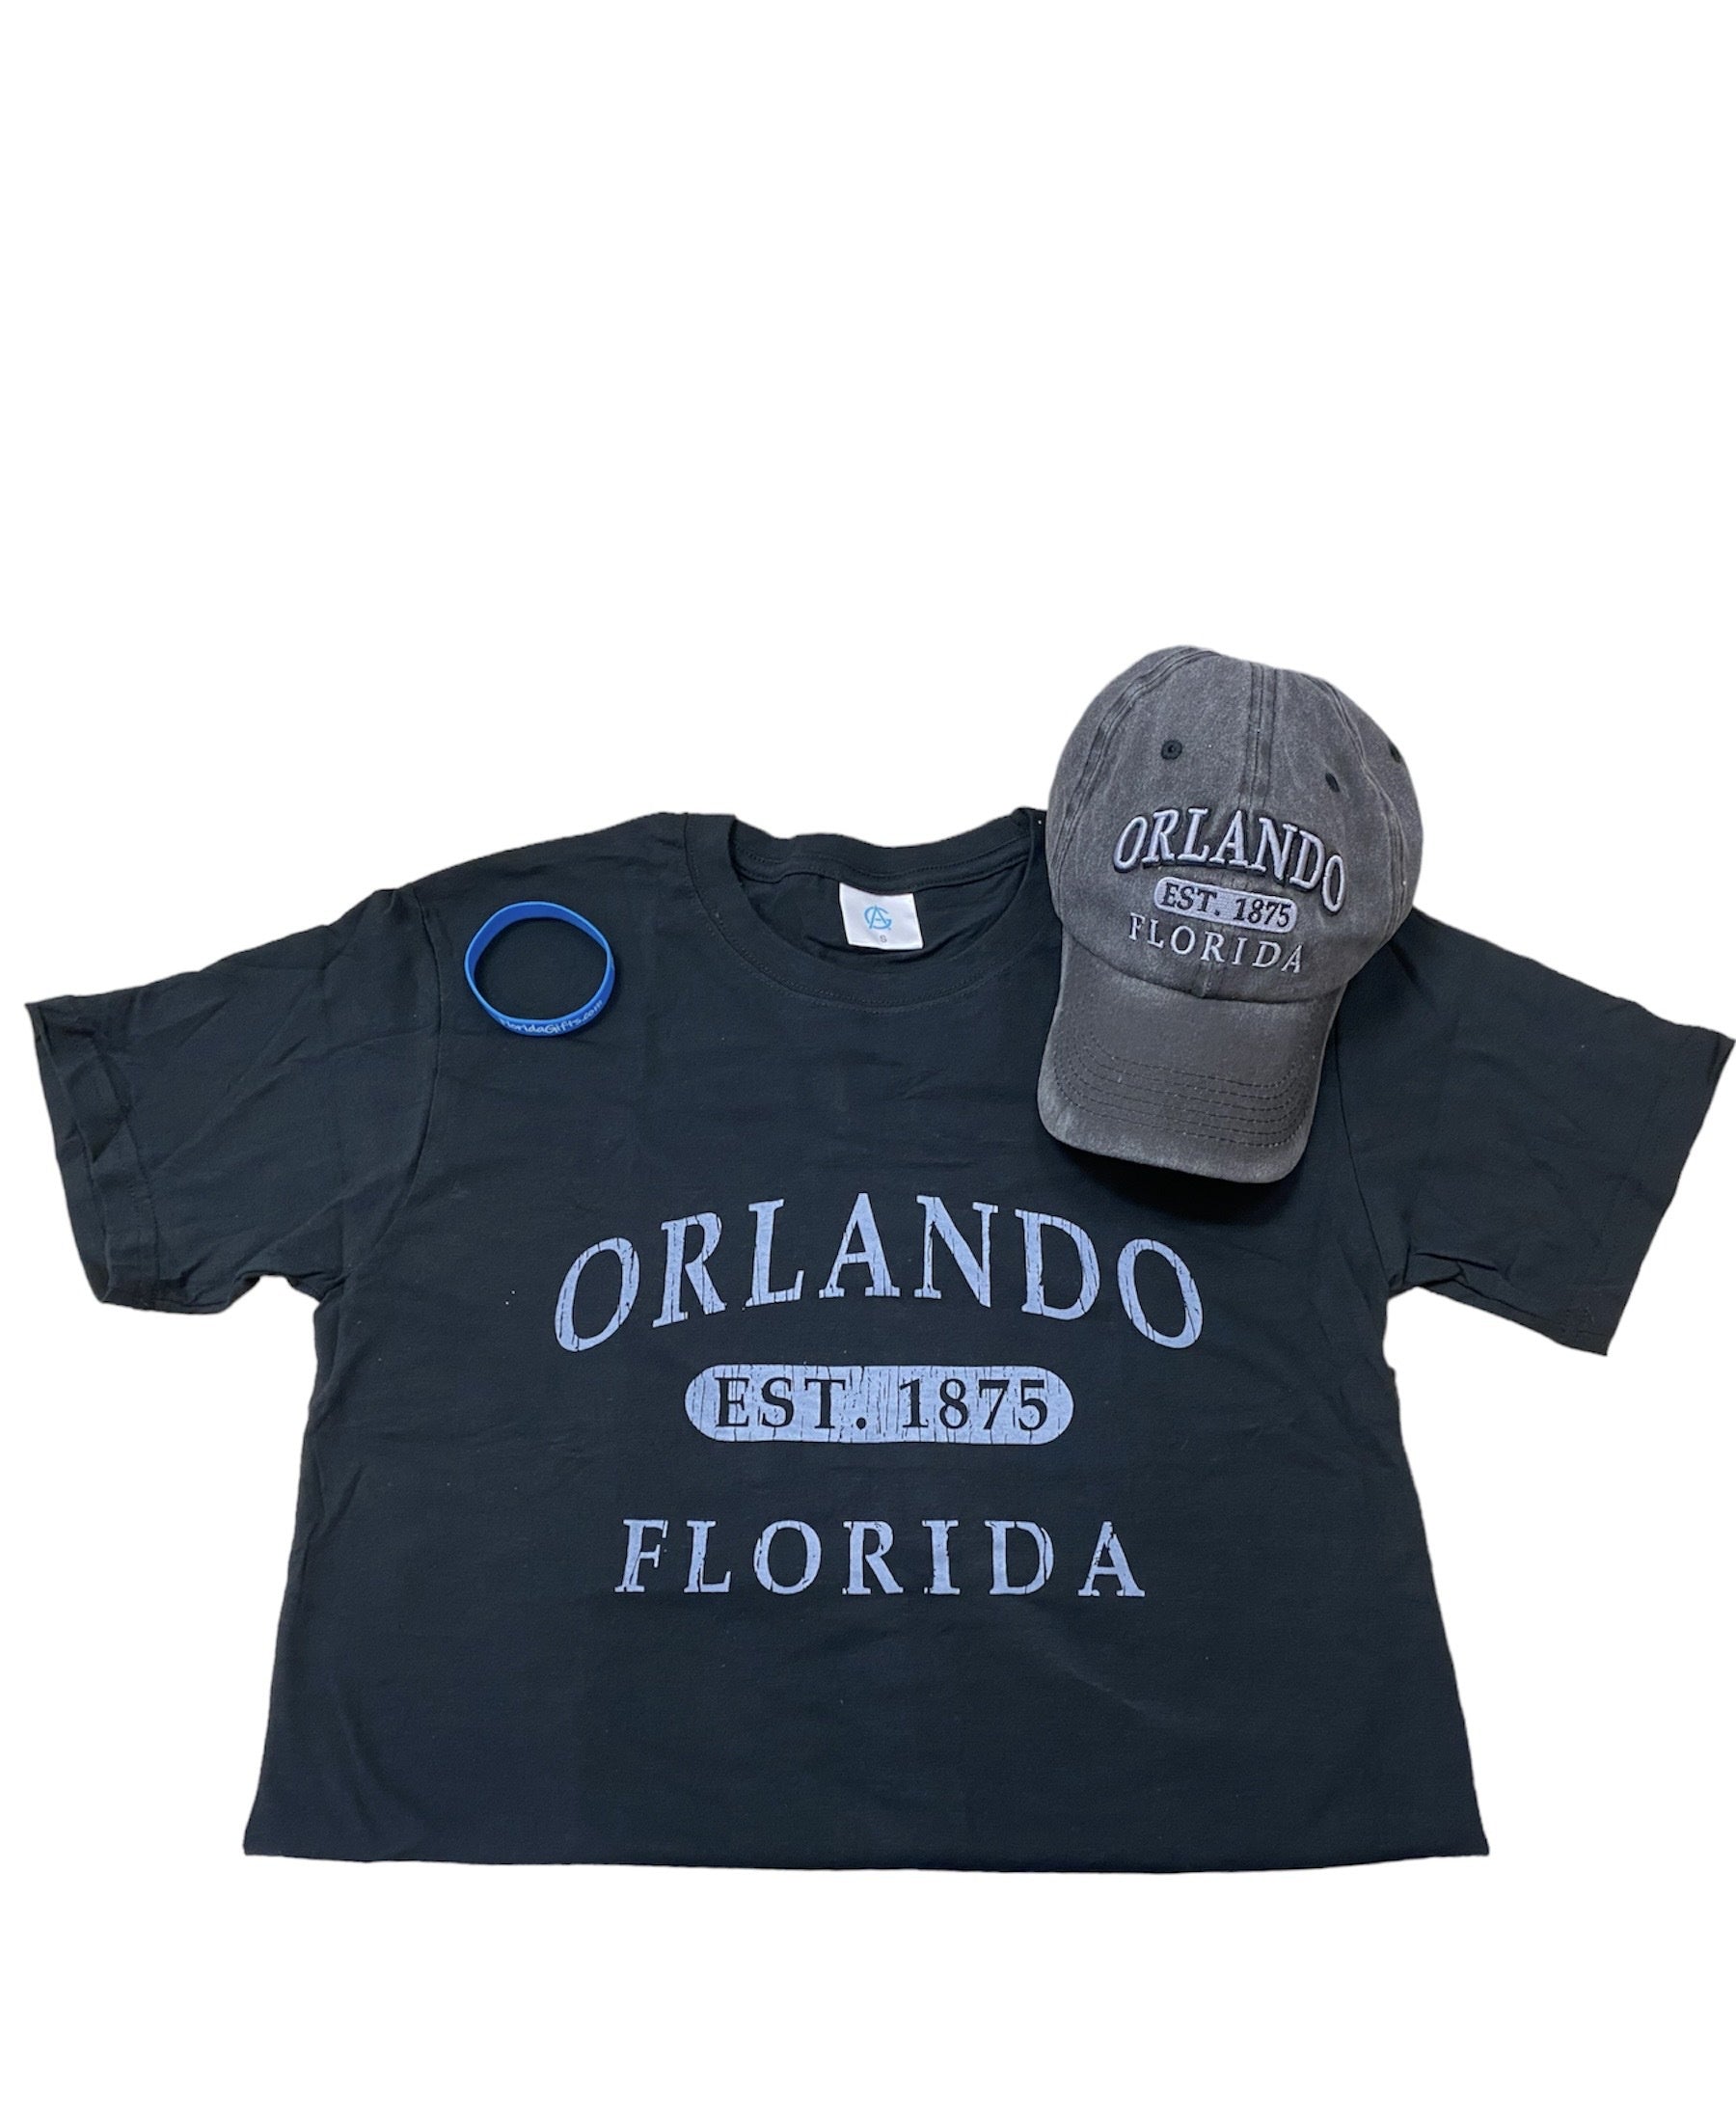 Orlando Florida Black Shirt With Black Cap Set